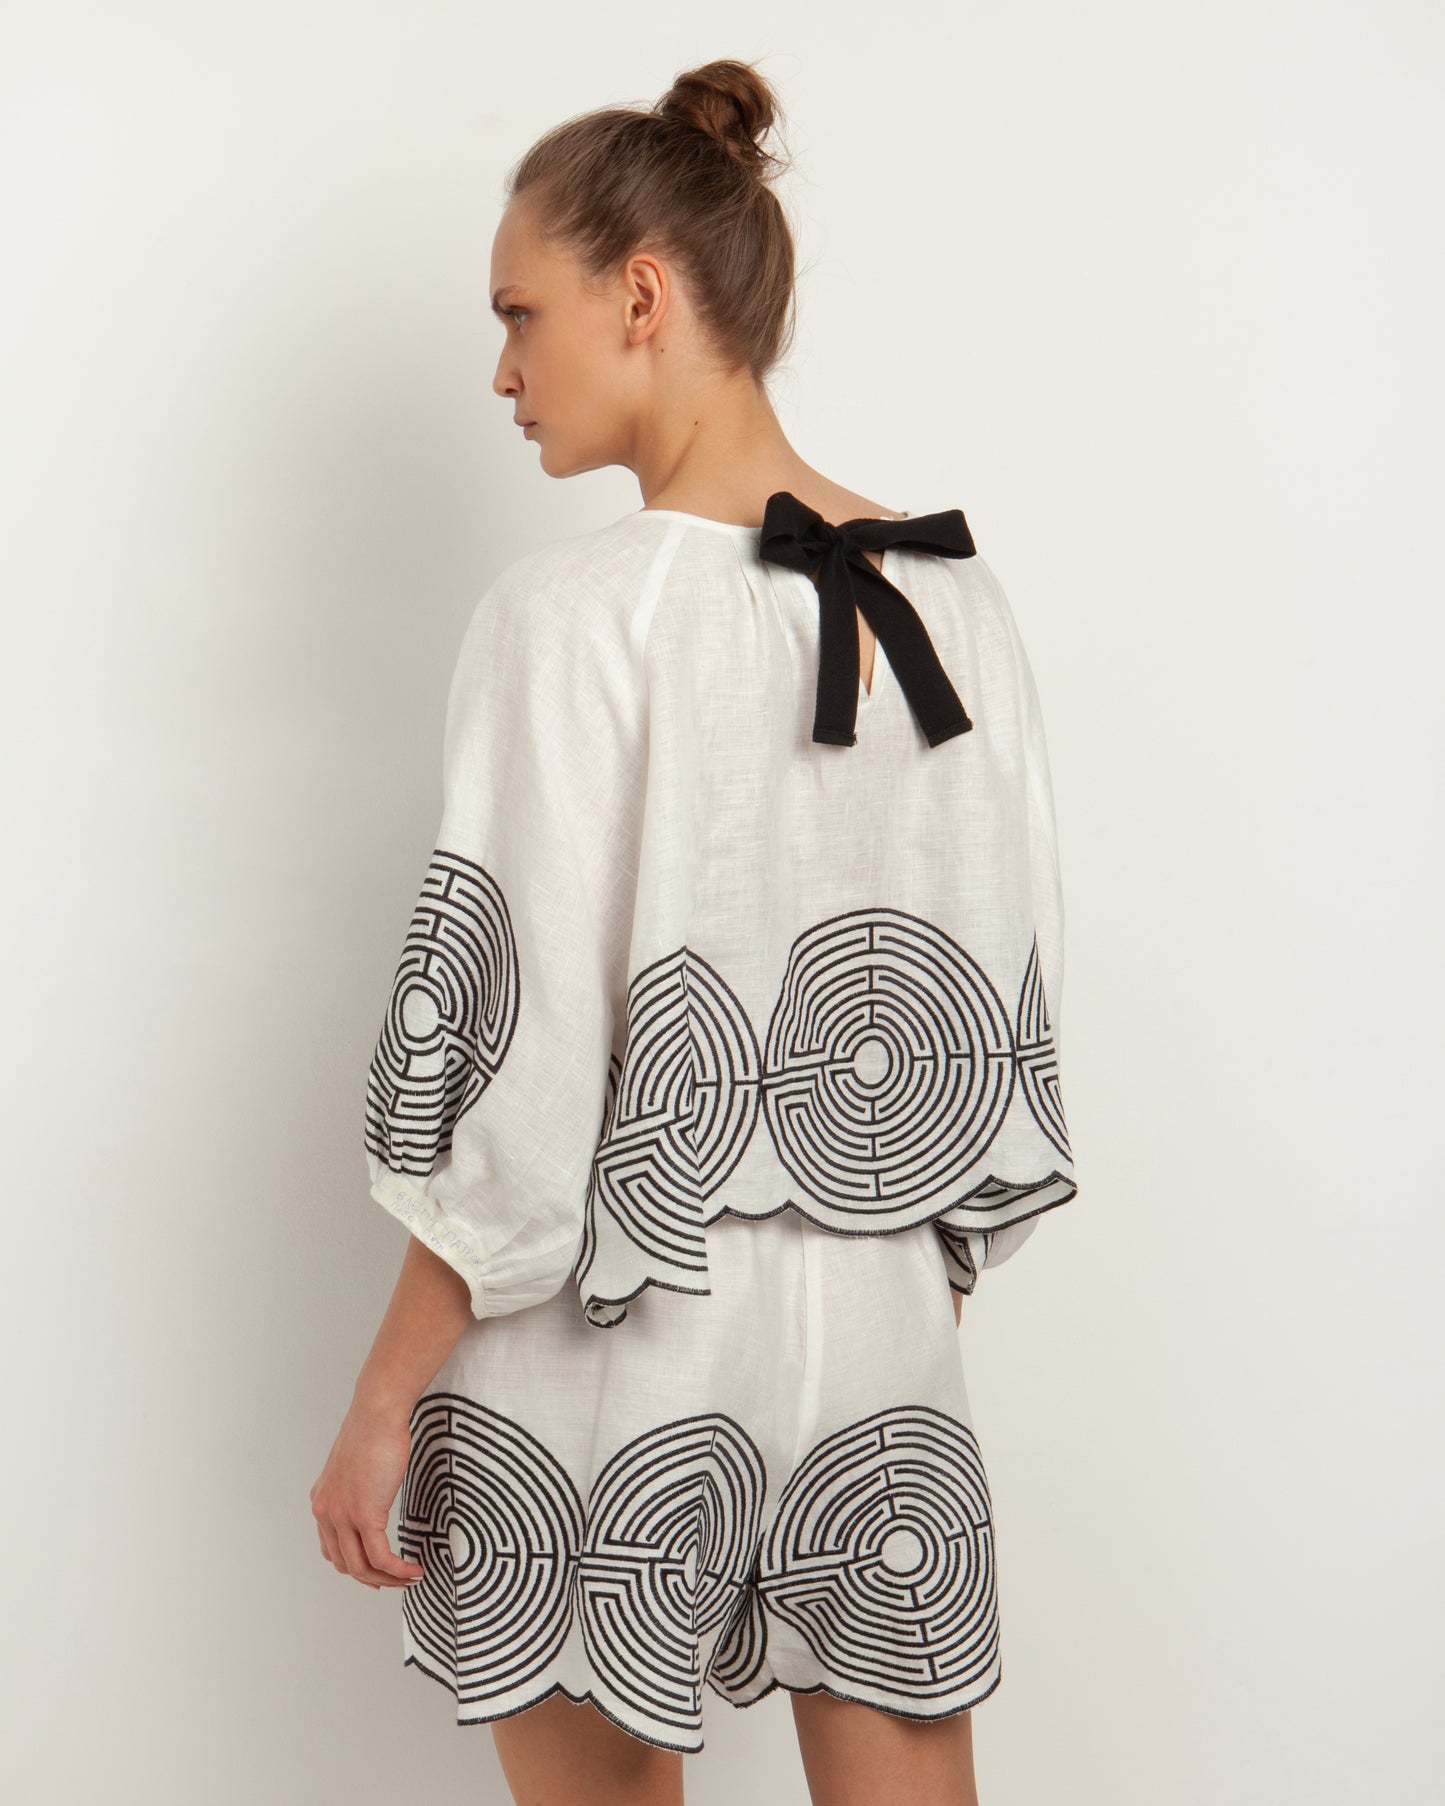 Greek Archaic Kori | blouse labyrinth back bow-tie - white/black - 240011